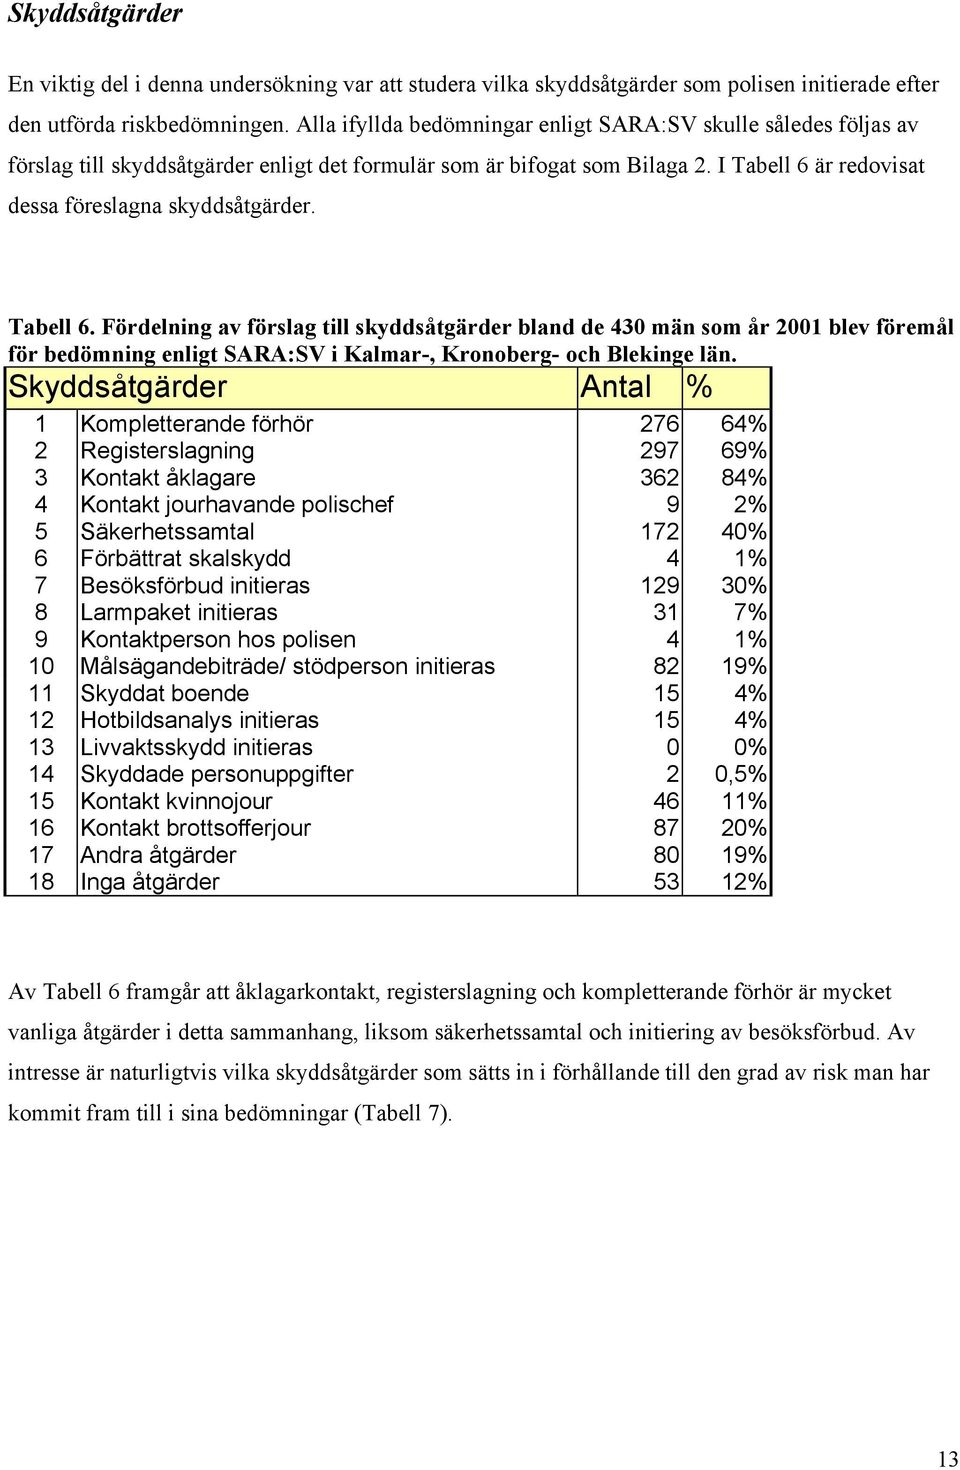 Tabell 6. Fördelning av förslag till skyddsåtgärder bland de 430 män som år 2001 blev föremål för bedömning enligt SARA:SV i Kalmar-, Kronoberg- och Blekinge län.